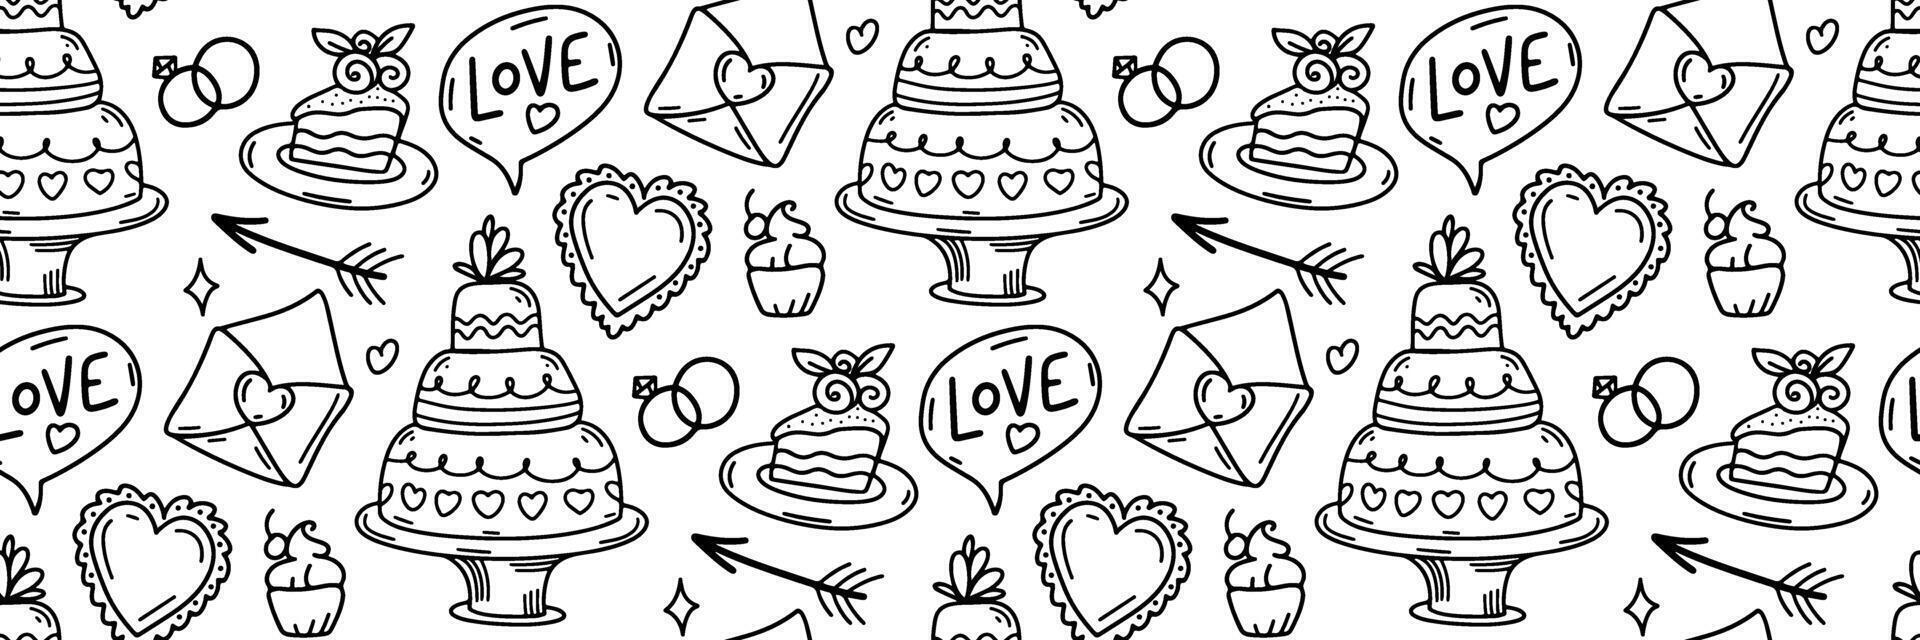 bruiloft tekening patroon. feestelijk schets achtergrond. bubbels opschrift liefde, bruiloft taart en gebakjes, harten, pijl. voor uitnodiging kaarten, omhulsel papier, behang of kleding stof. illustratie. vector